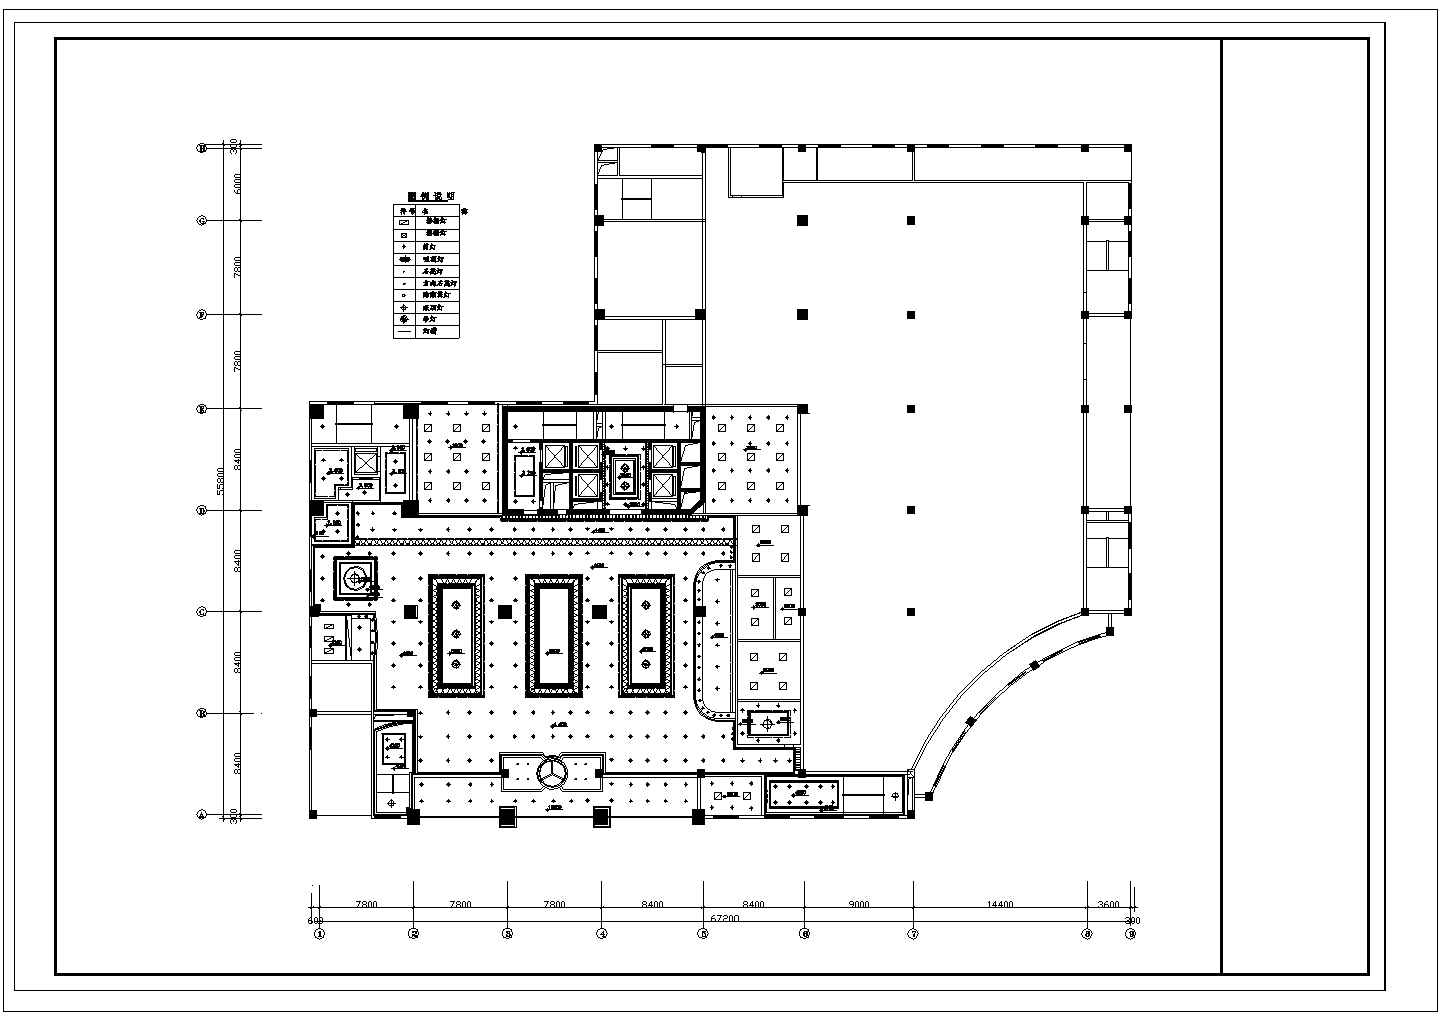 某地四星级酒店大堂装修设计施工图【平面 顶面 室内局部立面[32张]】